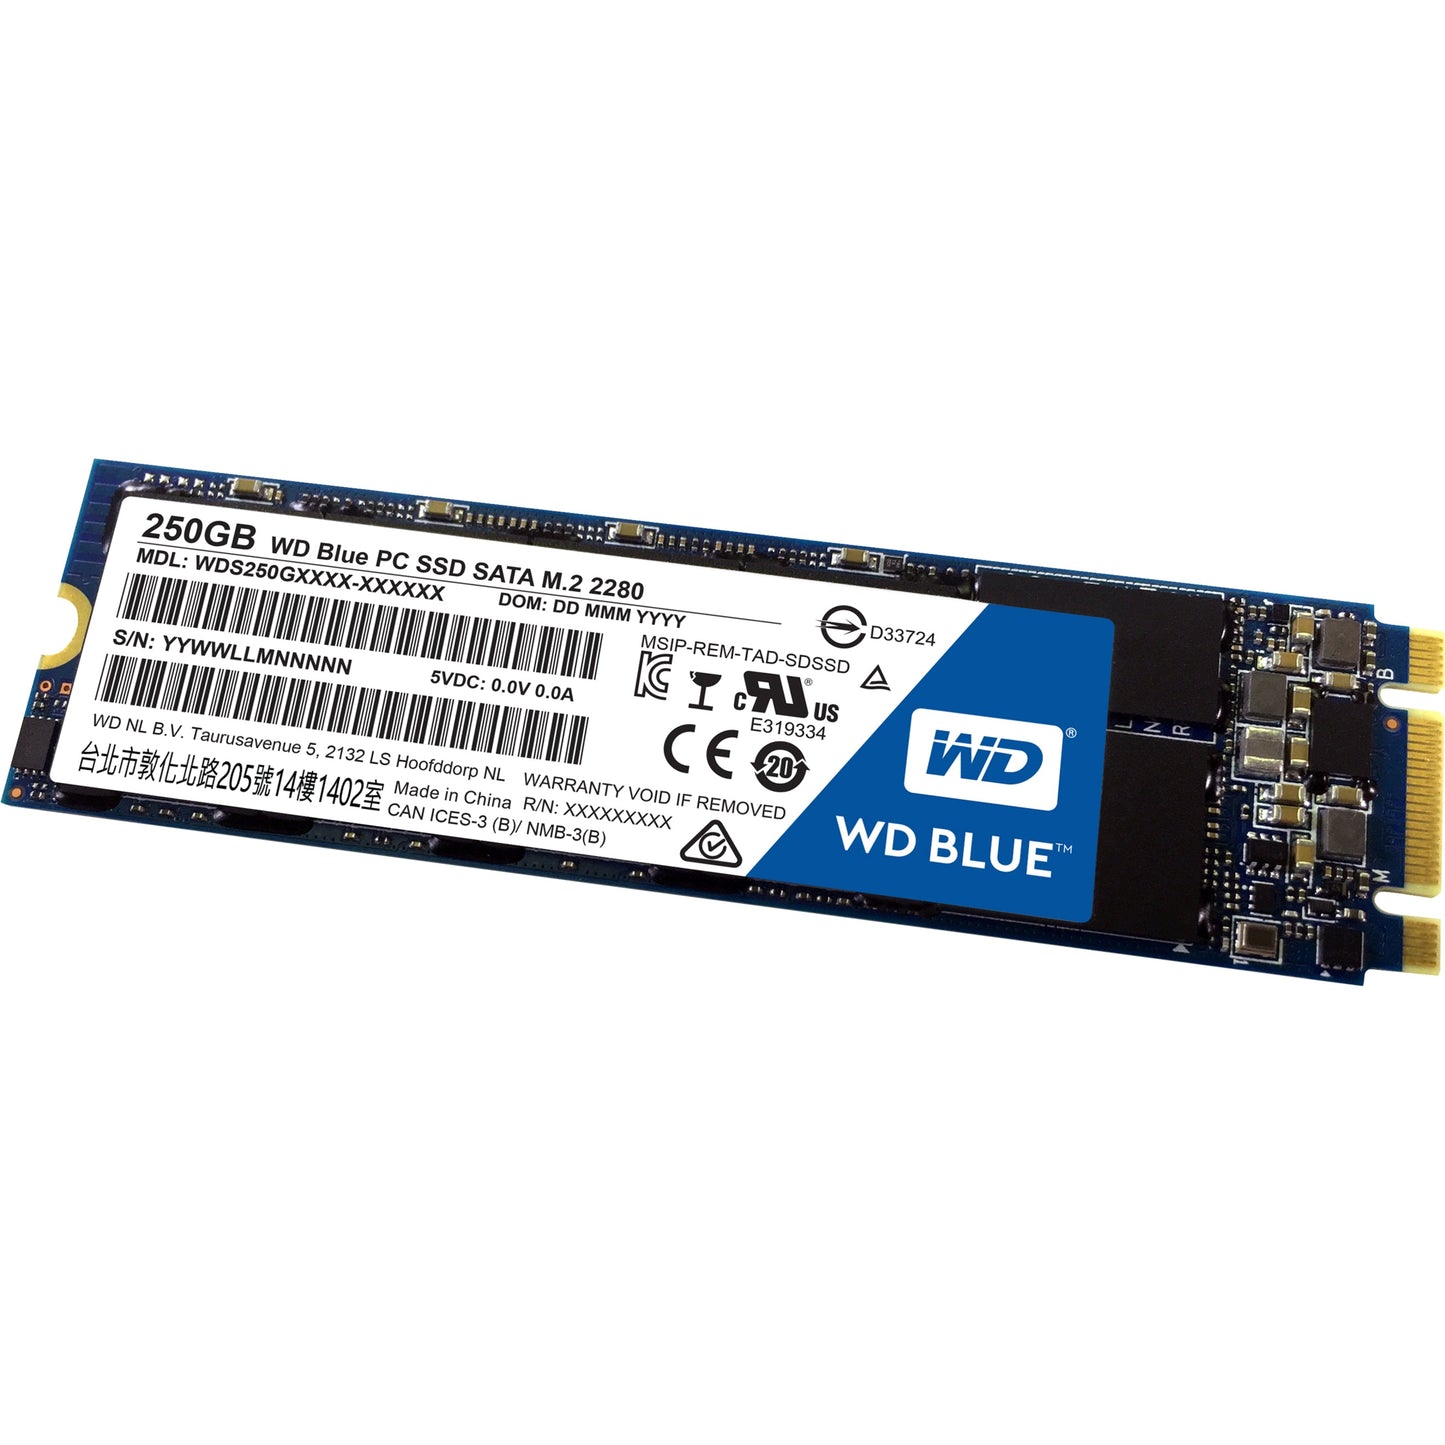 WD Blue M.2 250GB Internal SSD Solid State Drive - SATA 6Gb/s